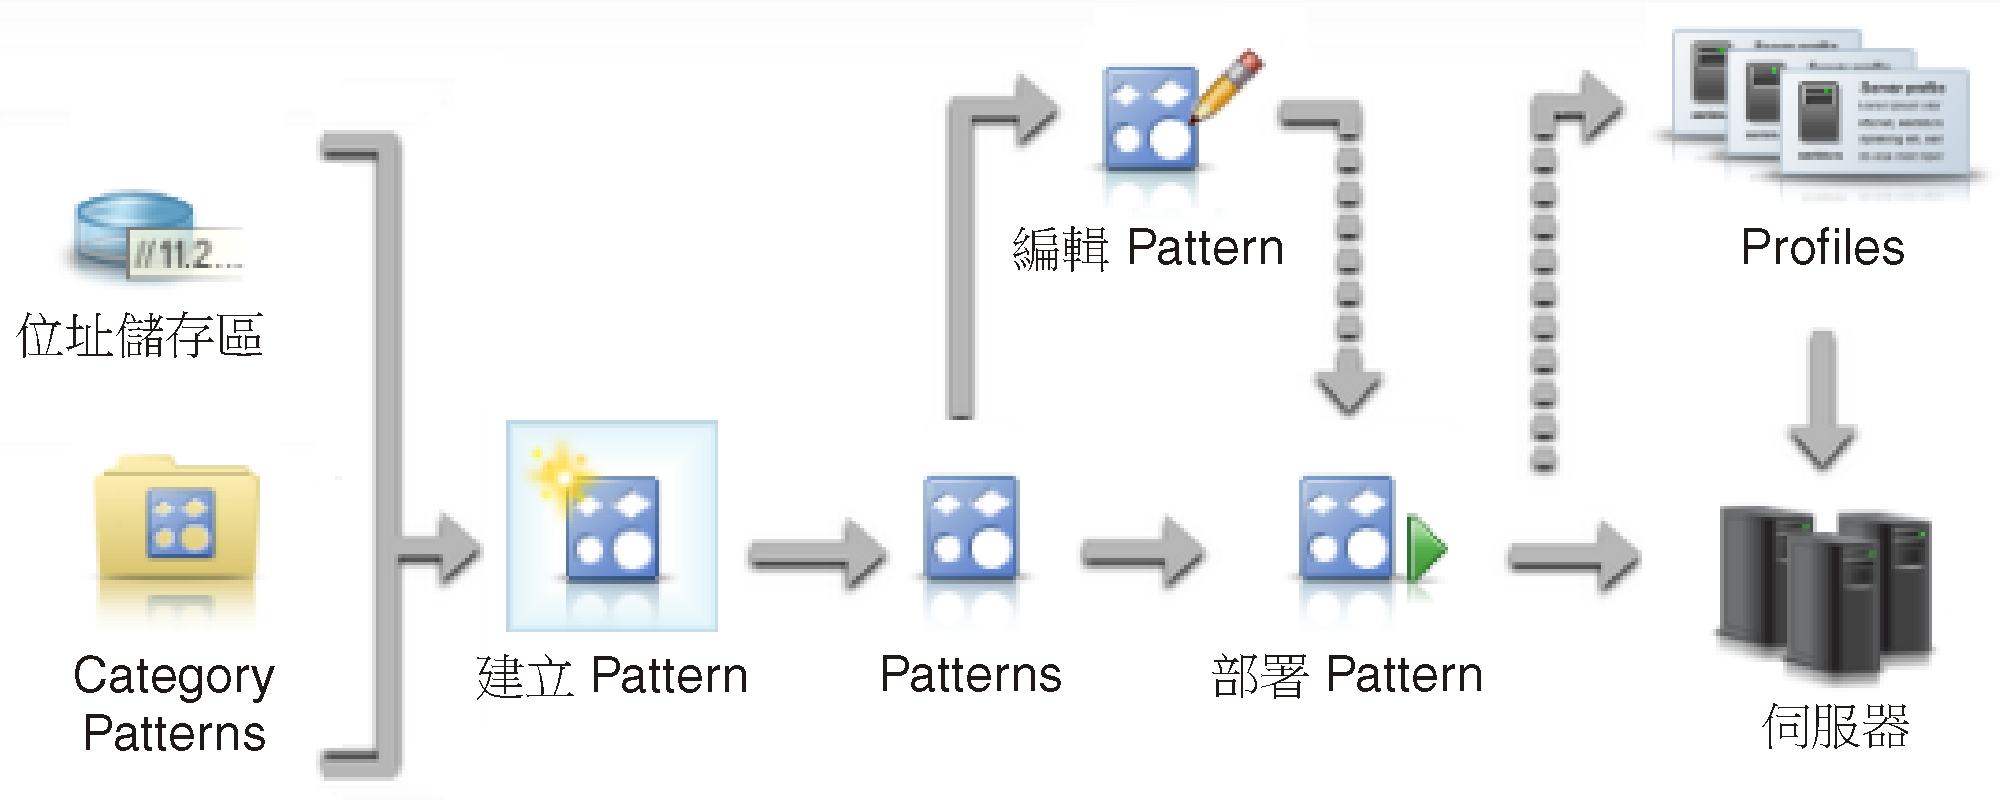 顯示建立和部署 Server Pattern 的步驟。